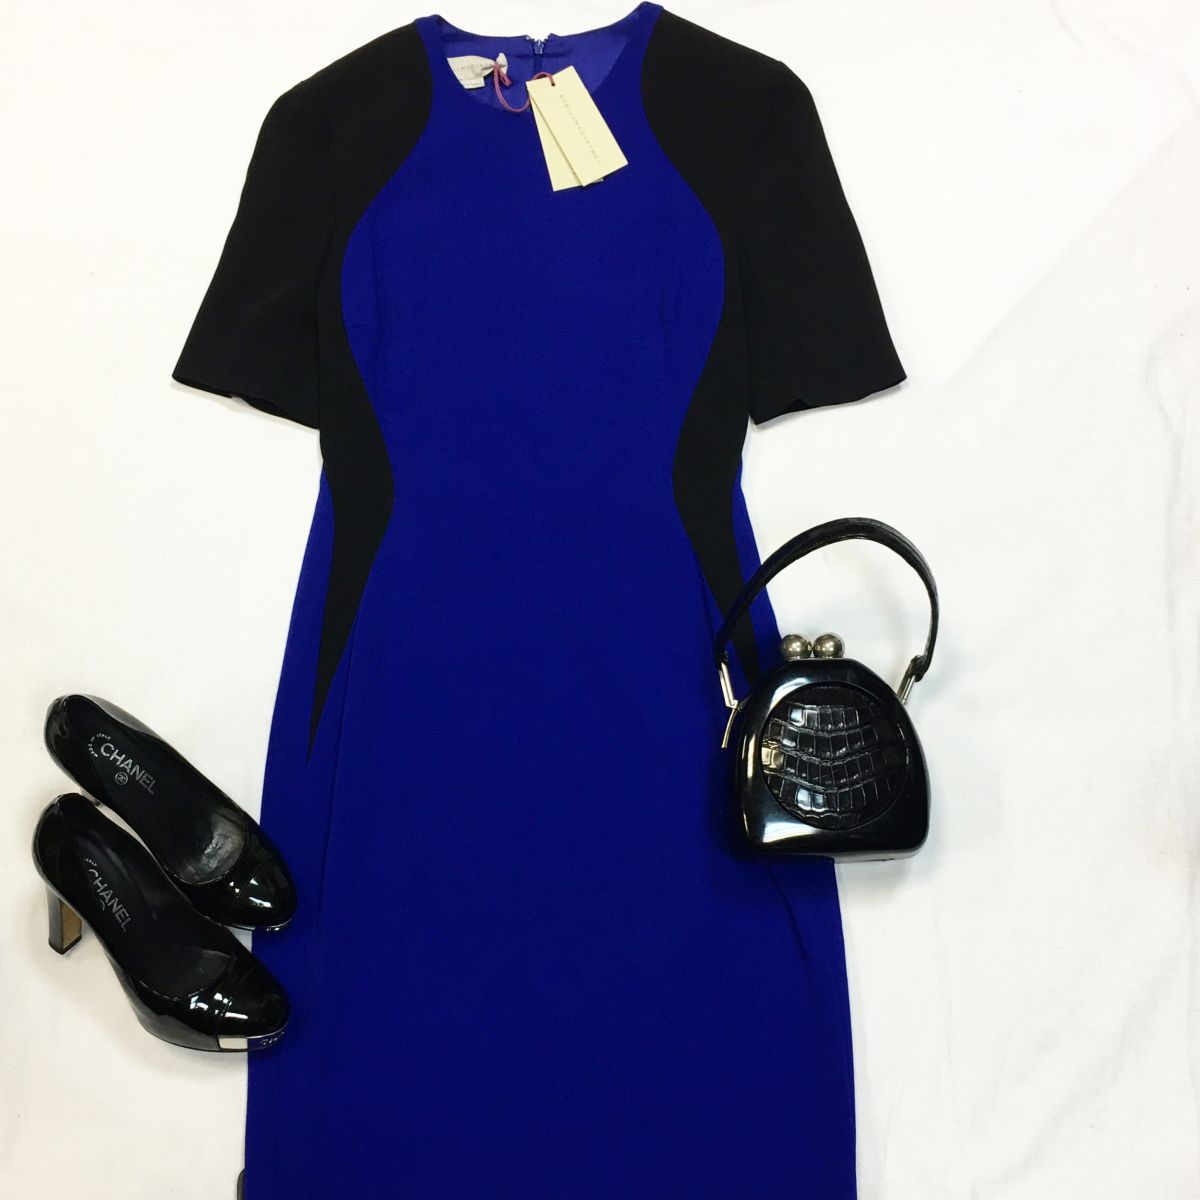 Платье Stella Mccrtney  размер 46 цена 15 385 руб /с ценником/ Туфли Chanel размер 38 цена 15 385 руб